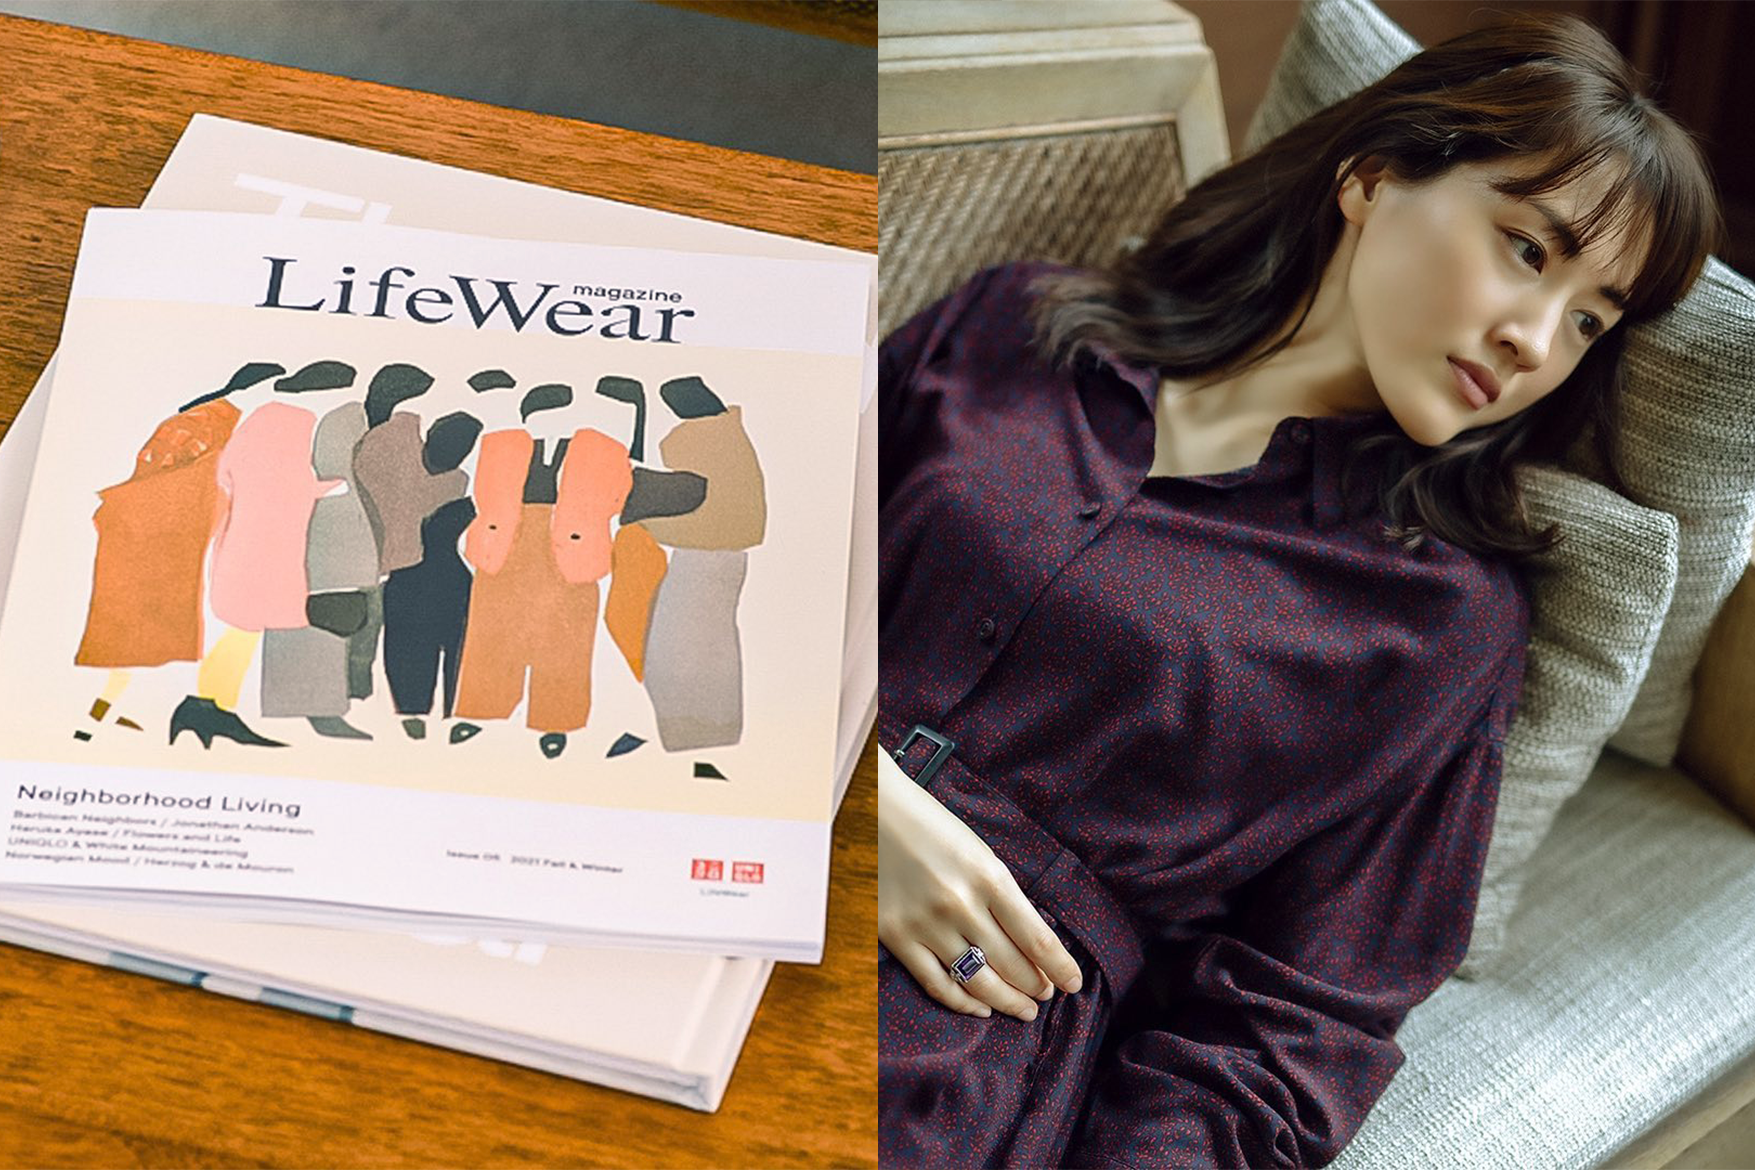 Uniqlo-fashion-magazine-Lifewear-Haruka-Ayase-interview-02